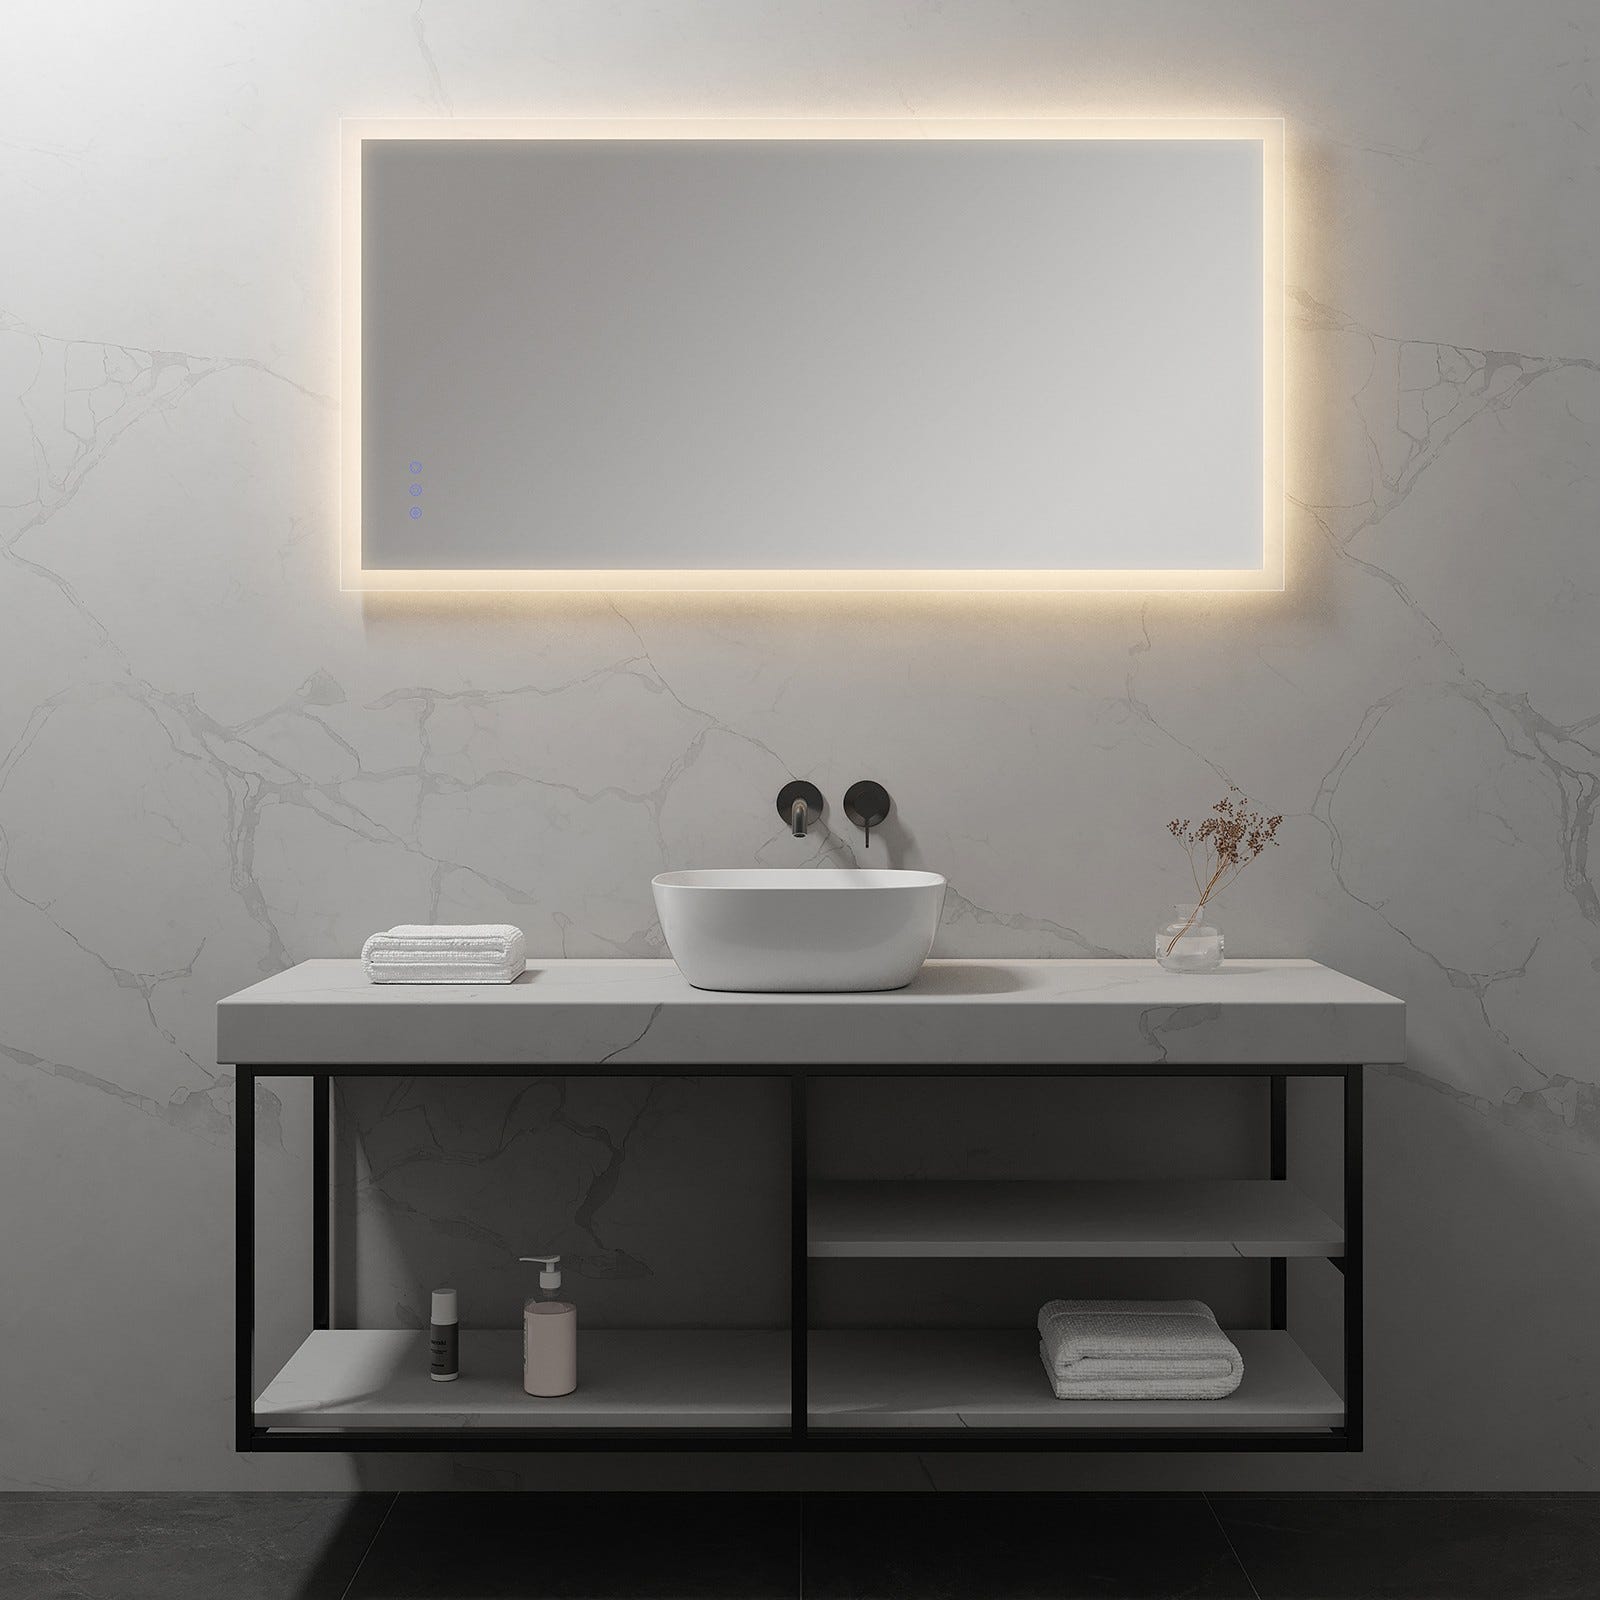 FRAME Miroir lumineux salle de bain LED 3 couleurs + intensité réglable & fonction anti-buée 70 x 140 cm 5